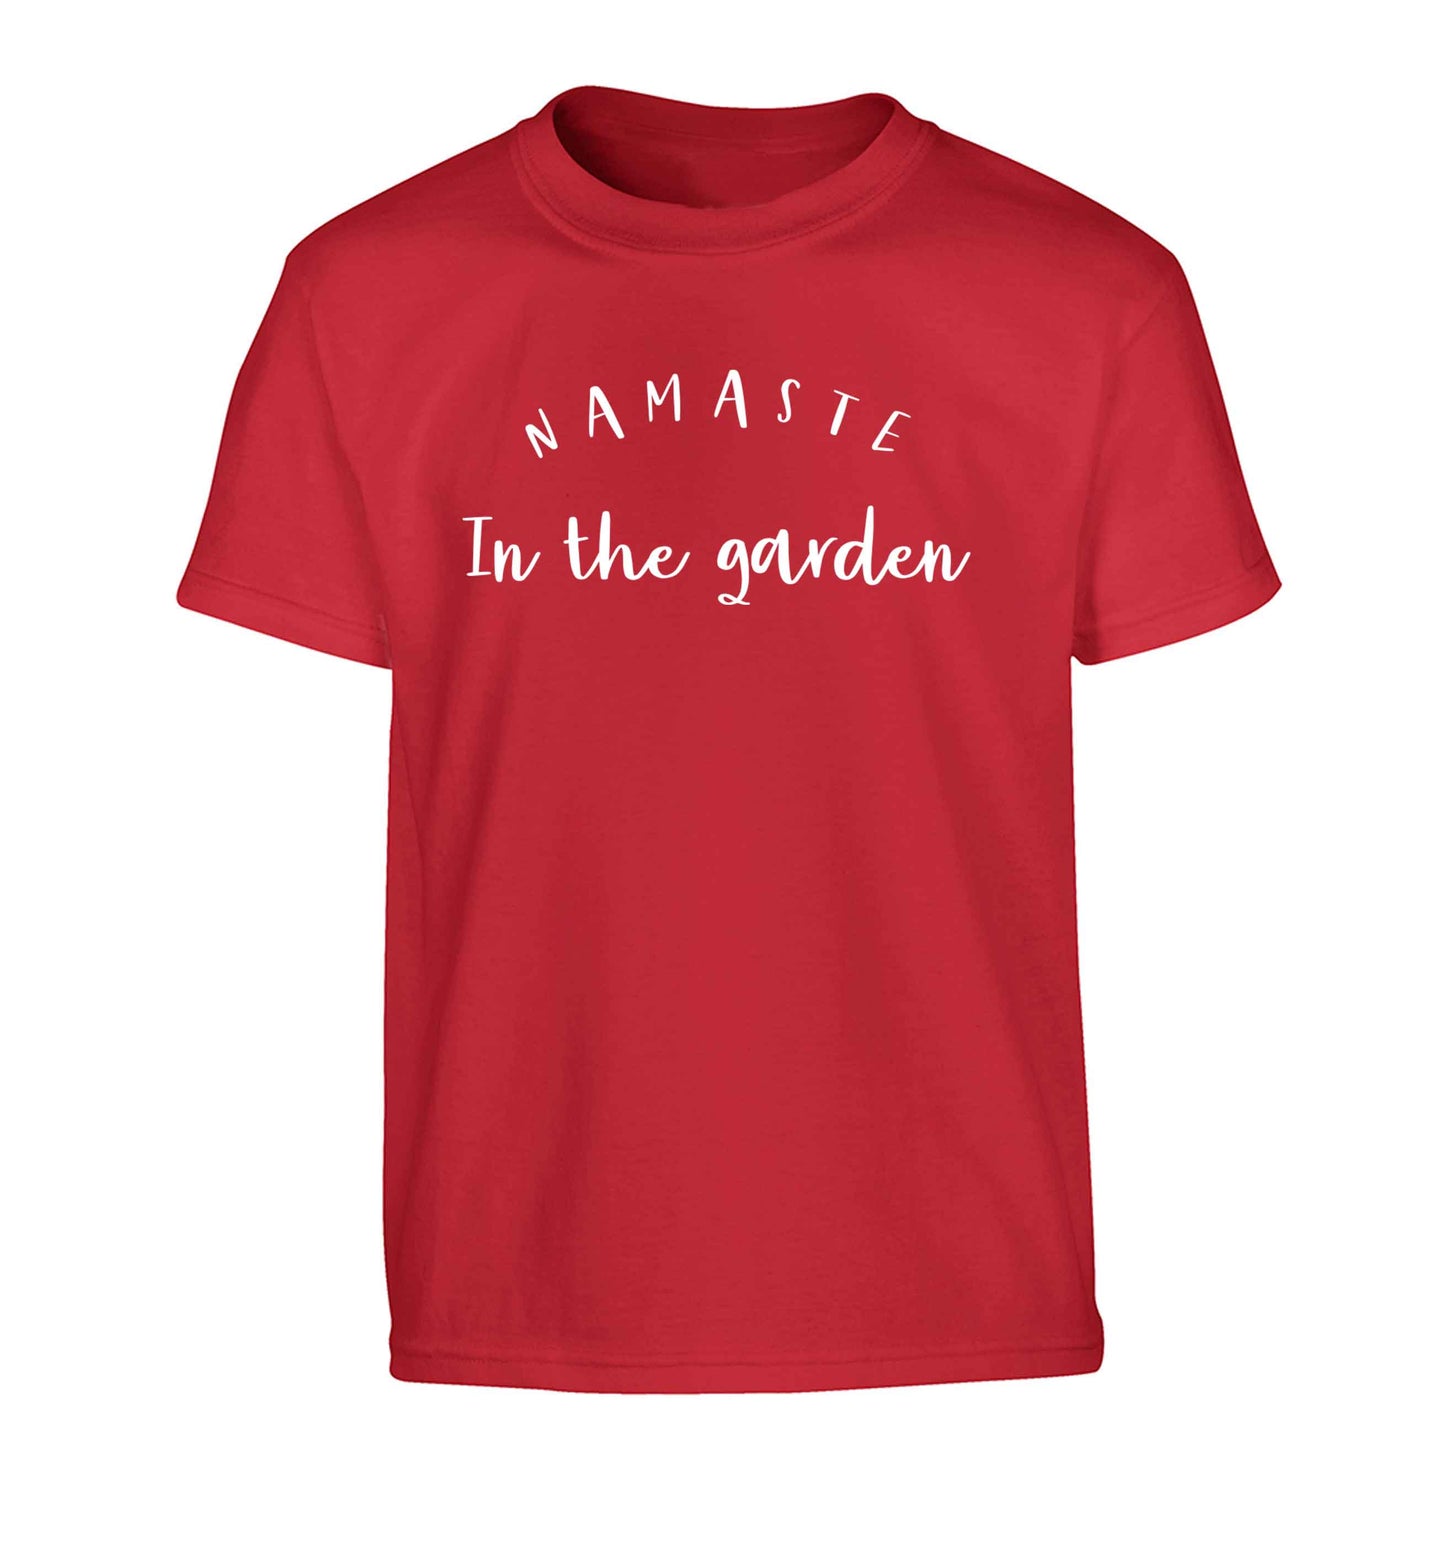 Namaste in the garden Children's red Tshirt 12-13 Years